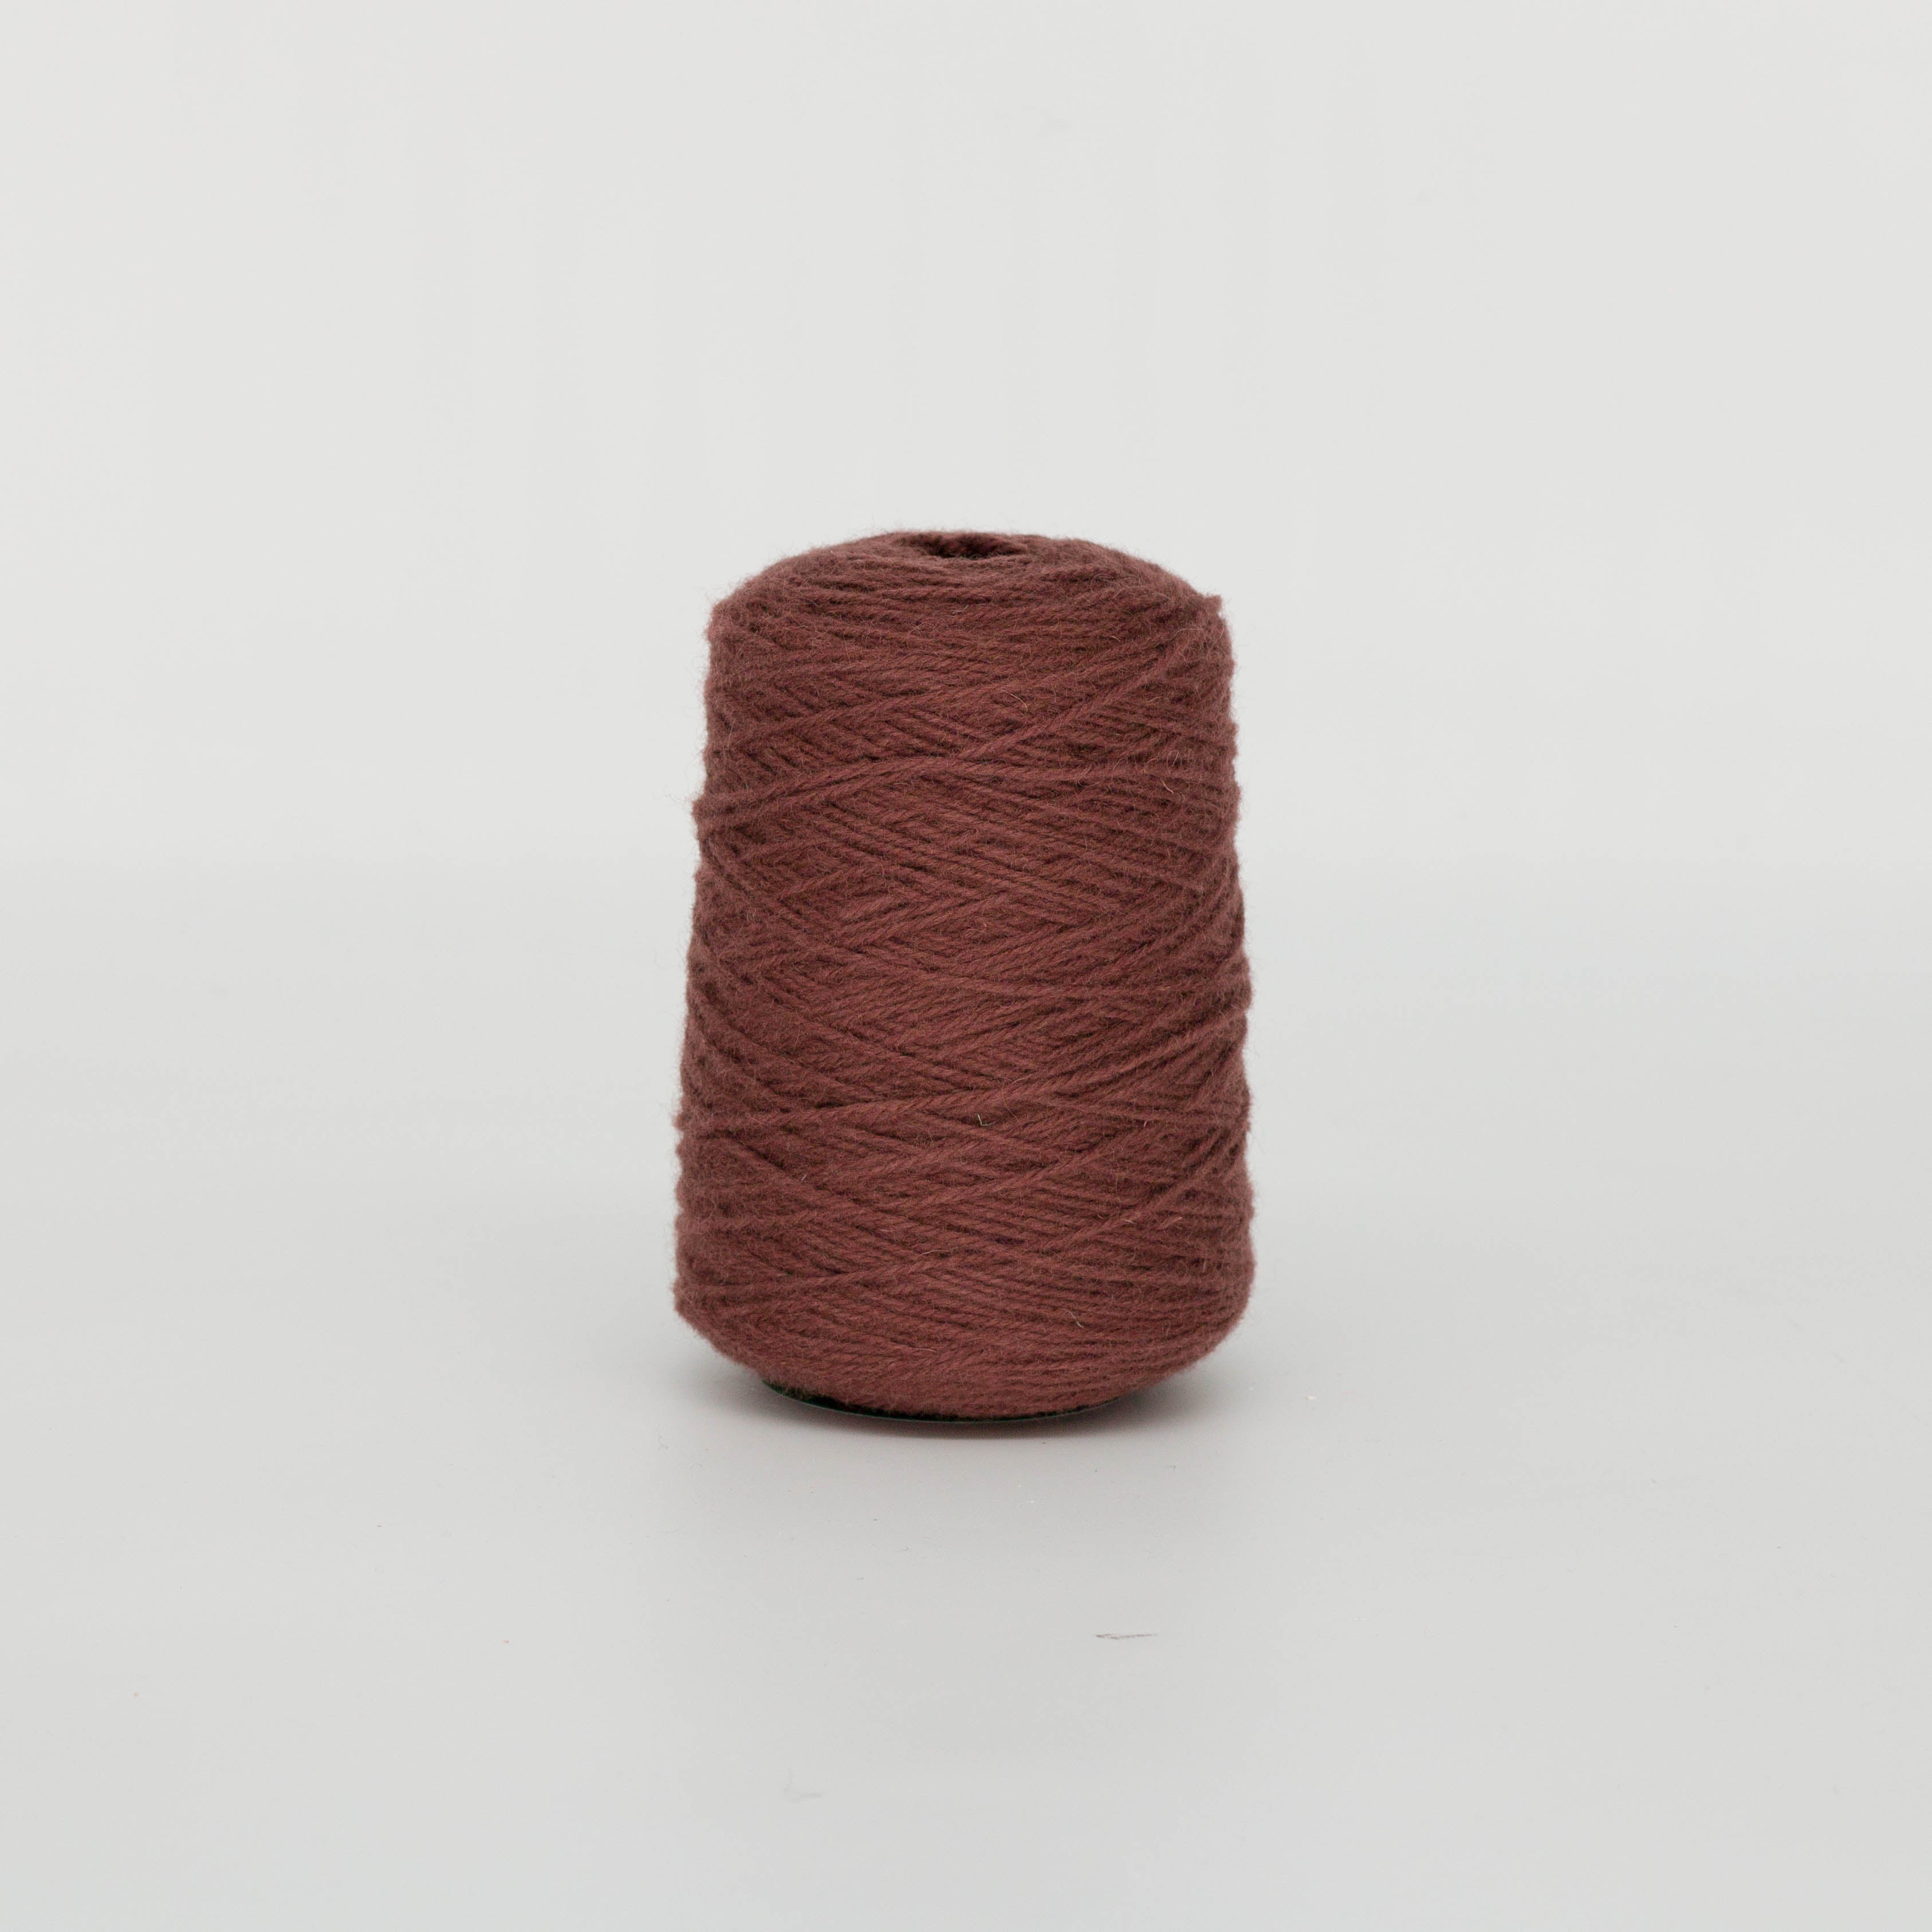 Brown syrup 100% Wool Rug Yarn On Cones (331) - Tuftingshop